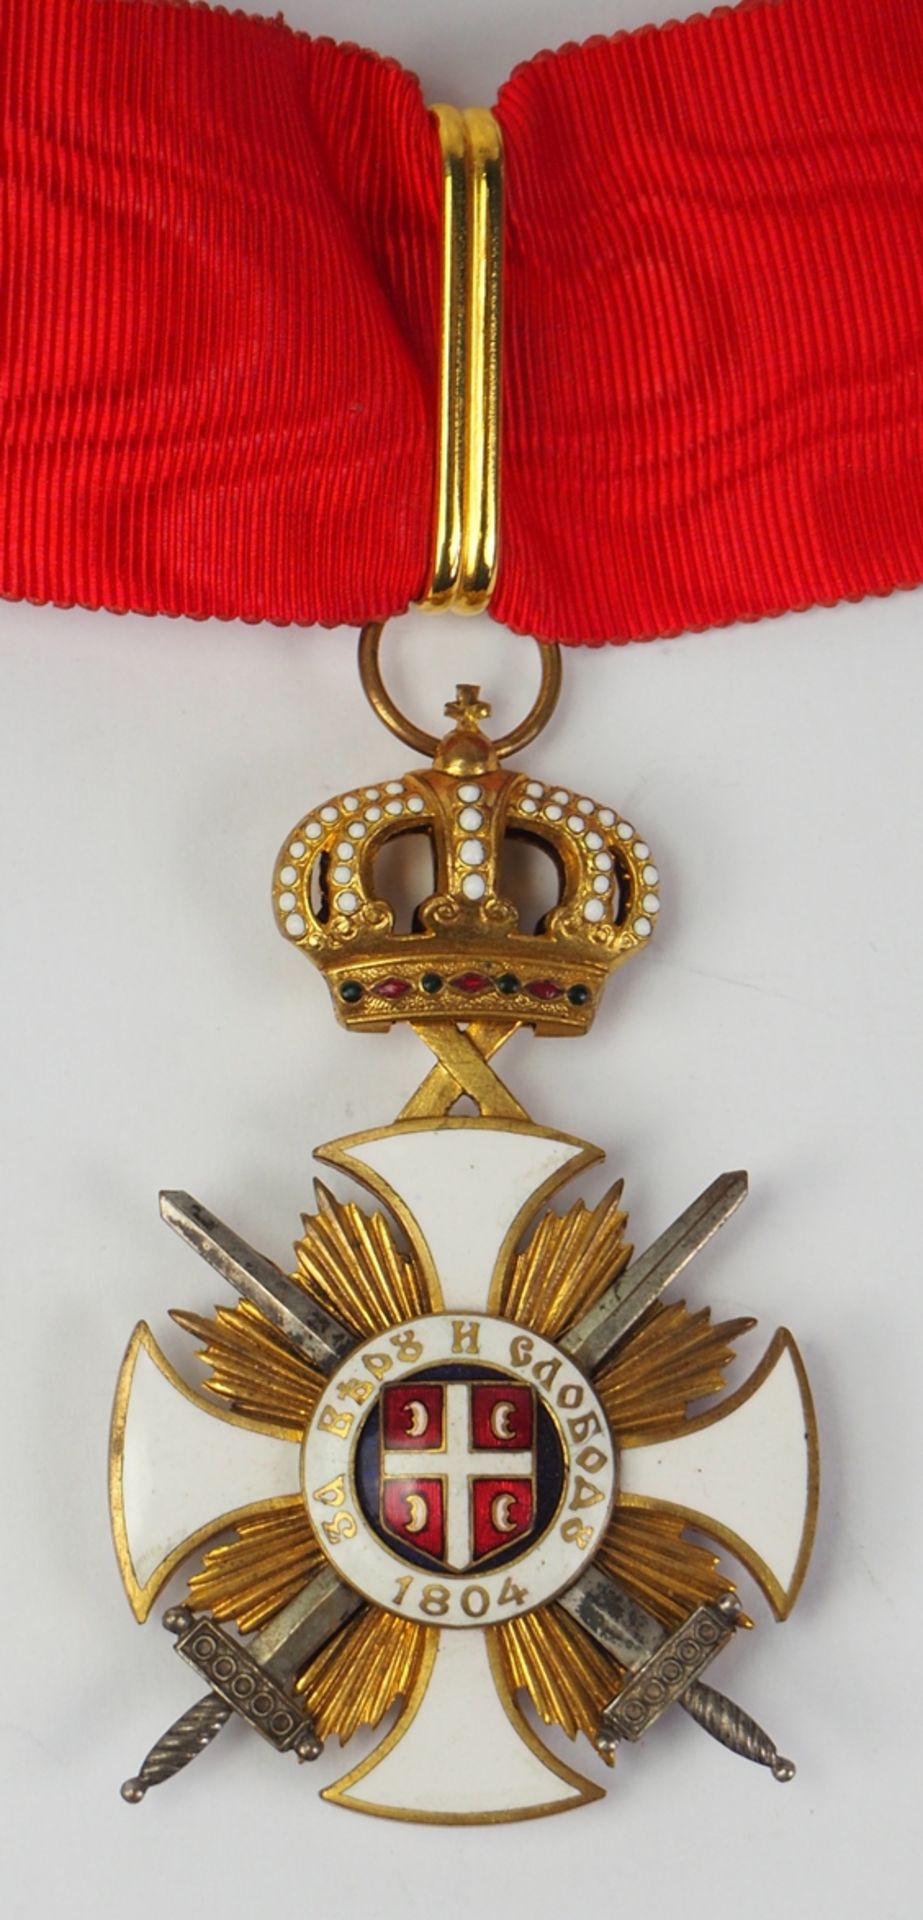 Serbien: Orden des Sterns von Karageorge, Komtur Kreuz, mit Schwertern.